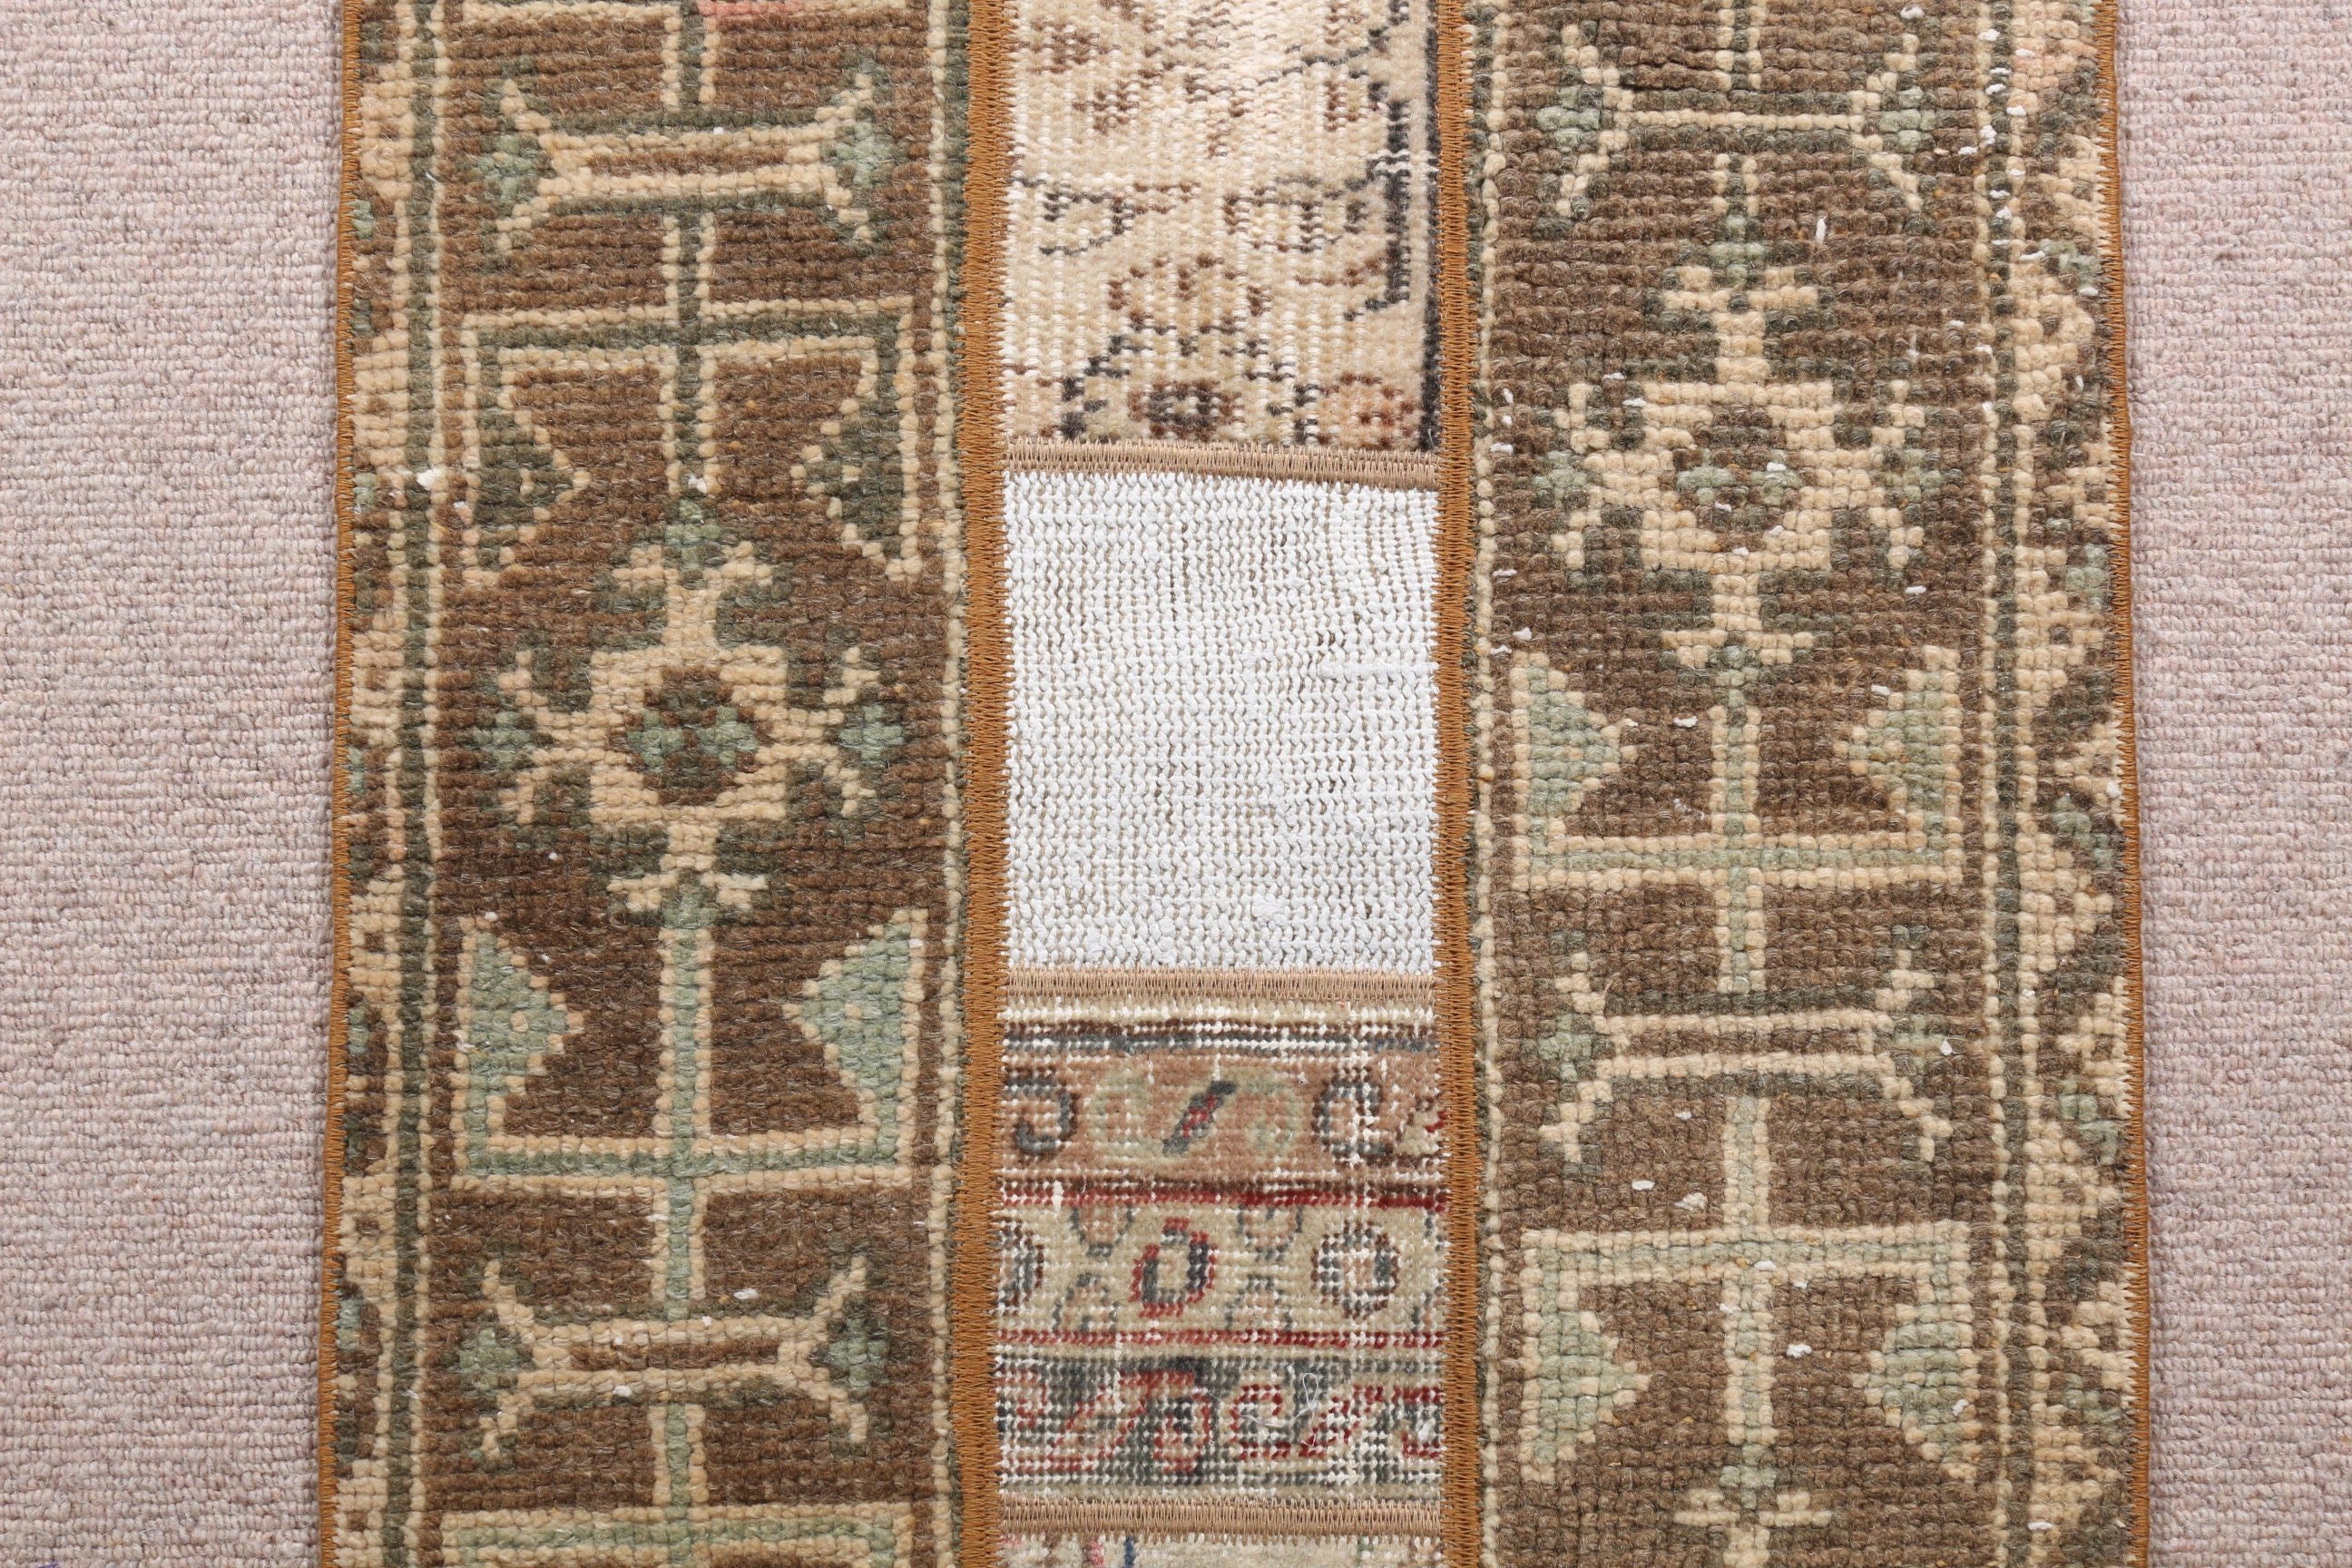 Turkish Rug, Vintage Rugs, Wall Hanging Rug, Art Rug, Car Mat Rug, Brown  1.7x3.2 ft Small Rug, Oriental Rugs